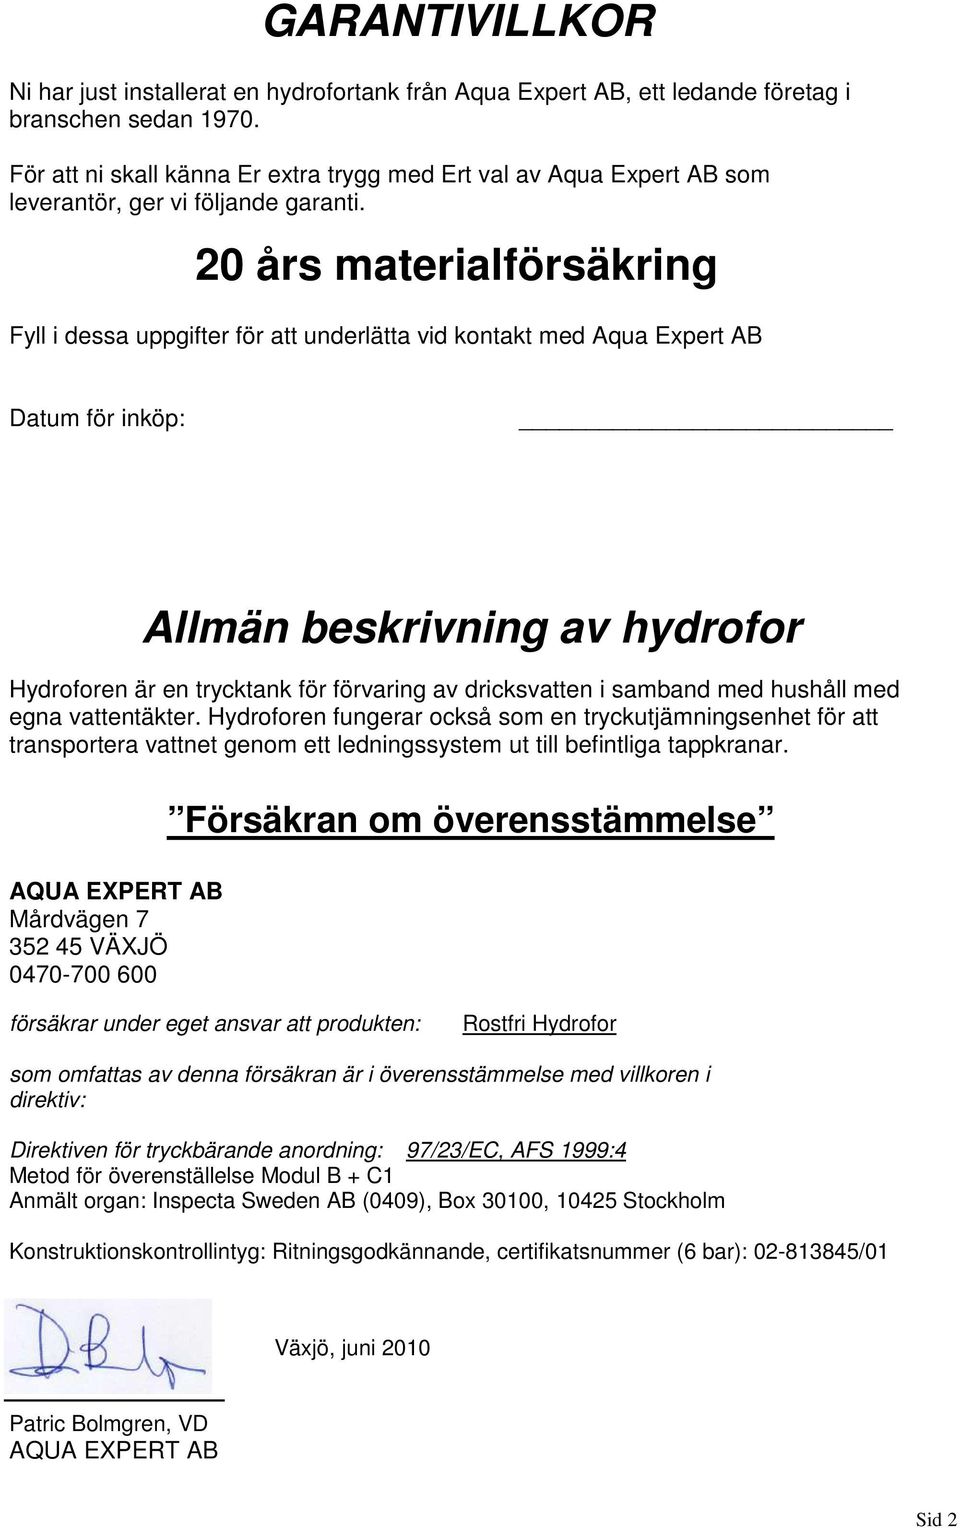 20 års materialförsäkring Fyll i dessa uppgifter för att underlätta vid kontakt med Aqua Expert AB Datum för inköp: Allmän beskrivning av hydrofor Hydroforen är en trycktank för förvaring av